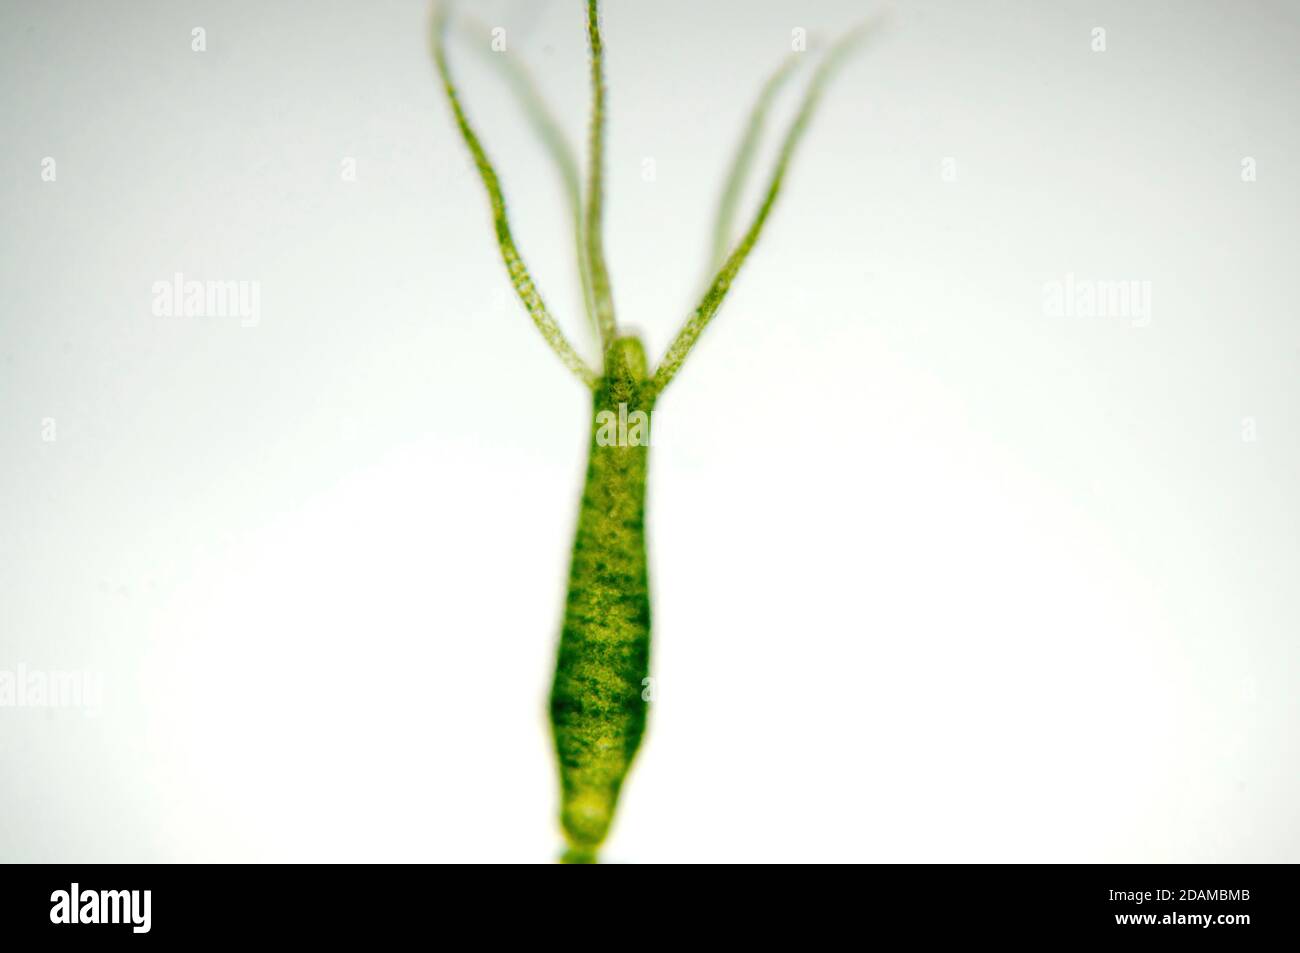 Hydra, micrografía ligera. Hydra son pequeños animales de agua dulce del phylum Cnidaria y la clase Hydrozoa. Foto de stock